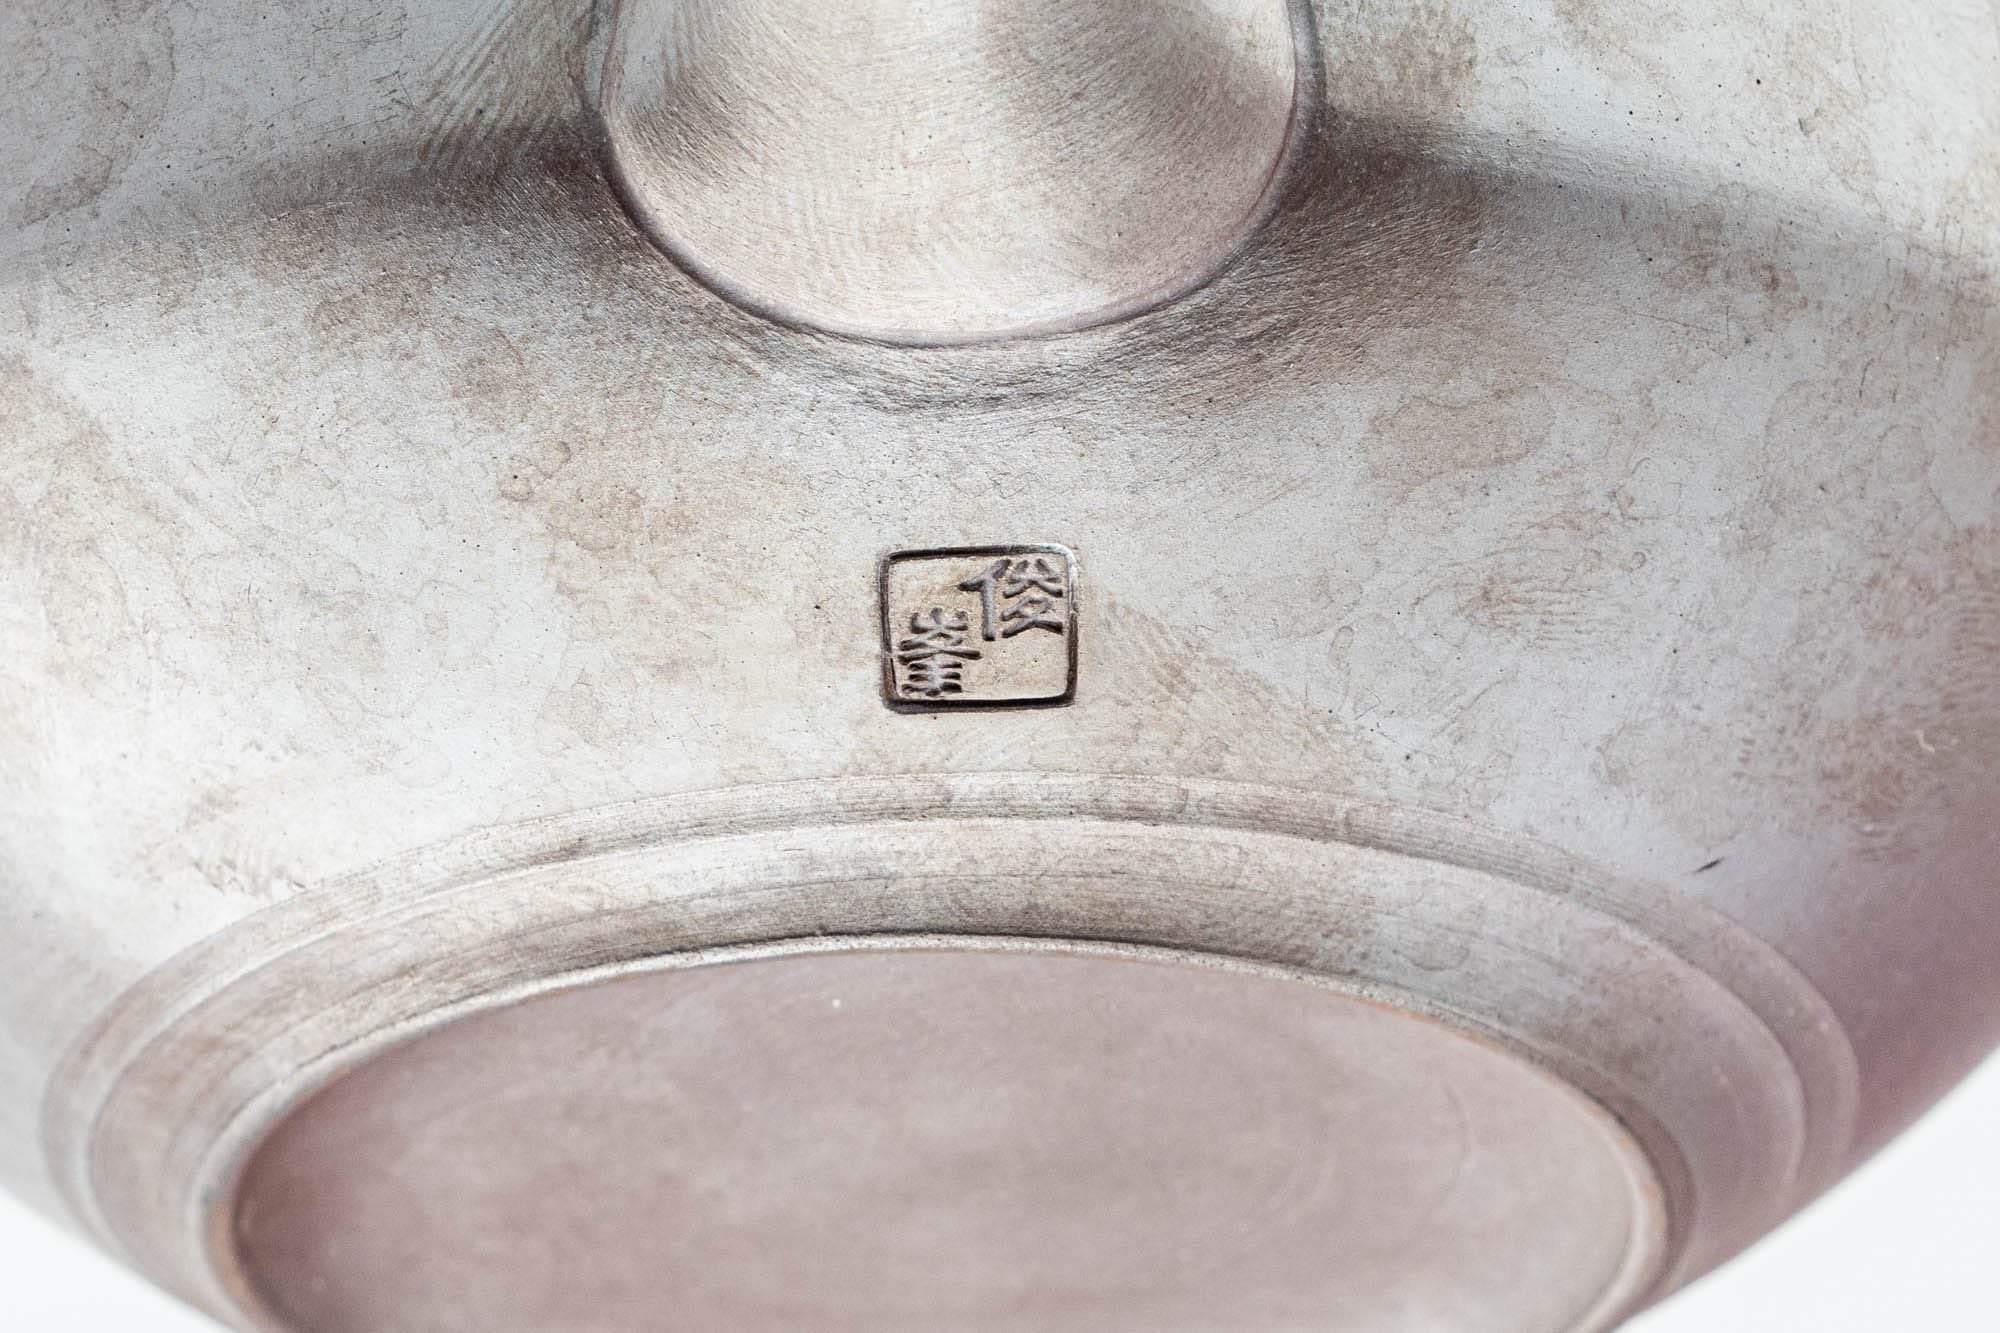 Japanese Kyusu - Sleek Banko-yaki Ceramic Filter Teapot - 200ml - Tezumi